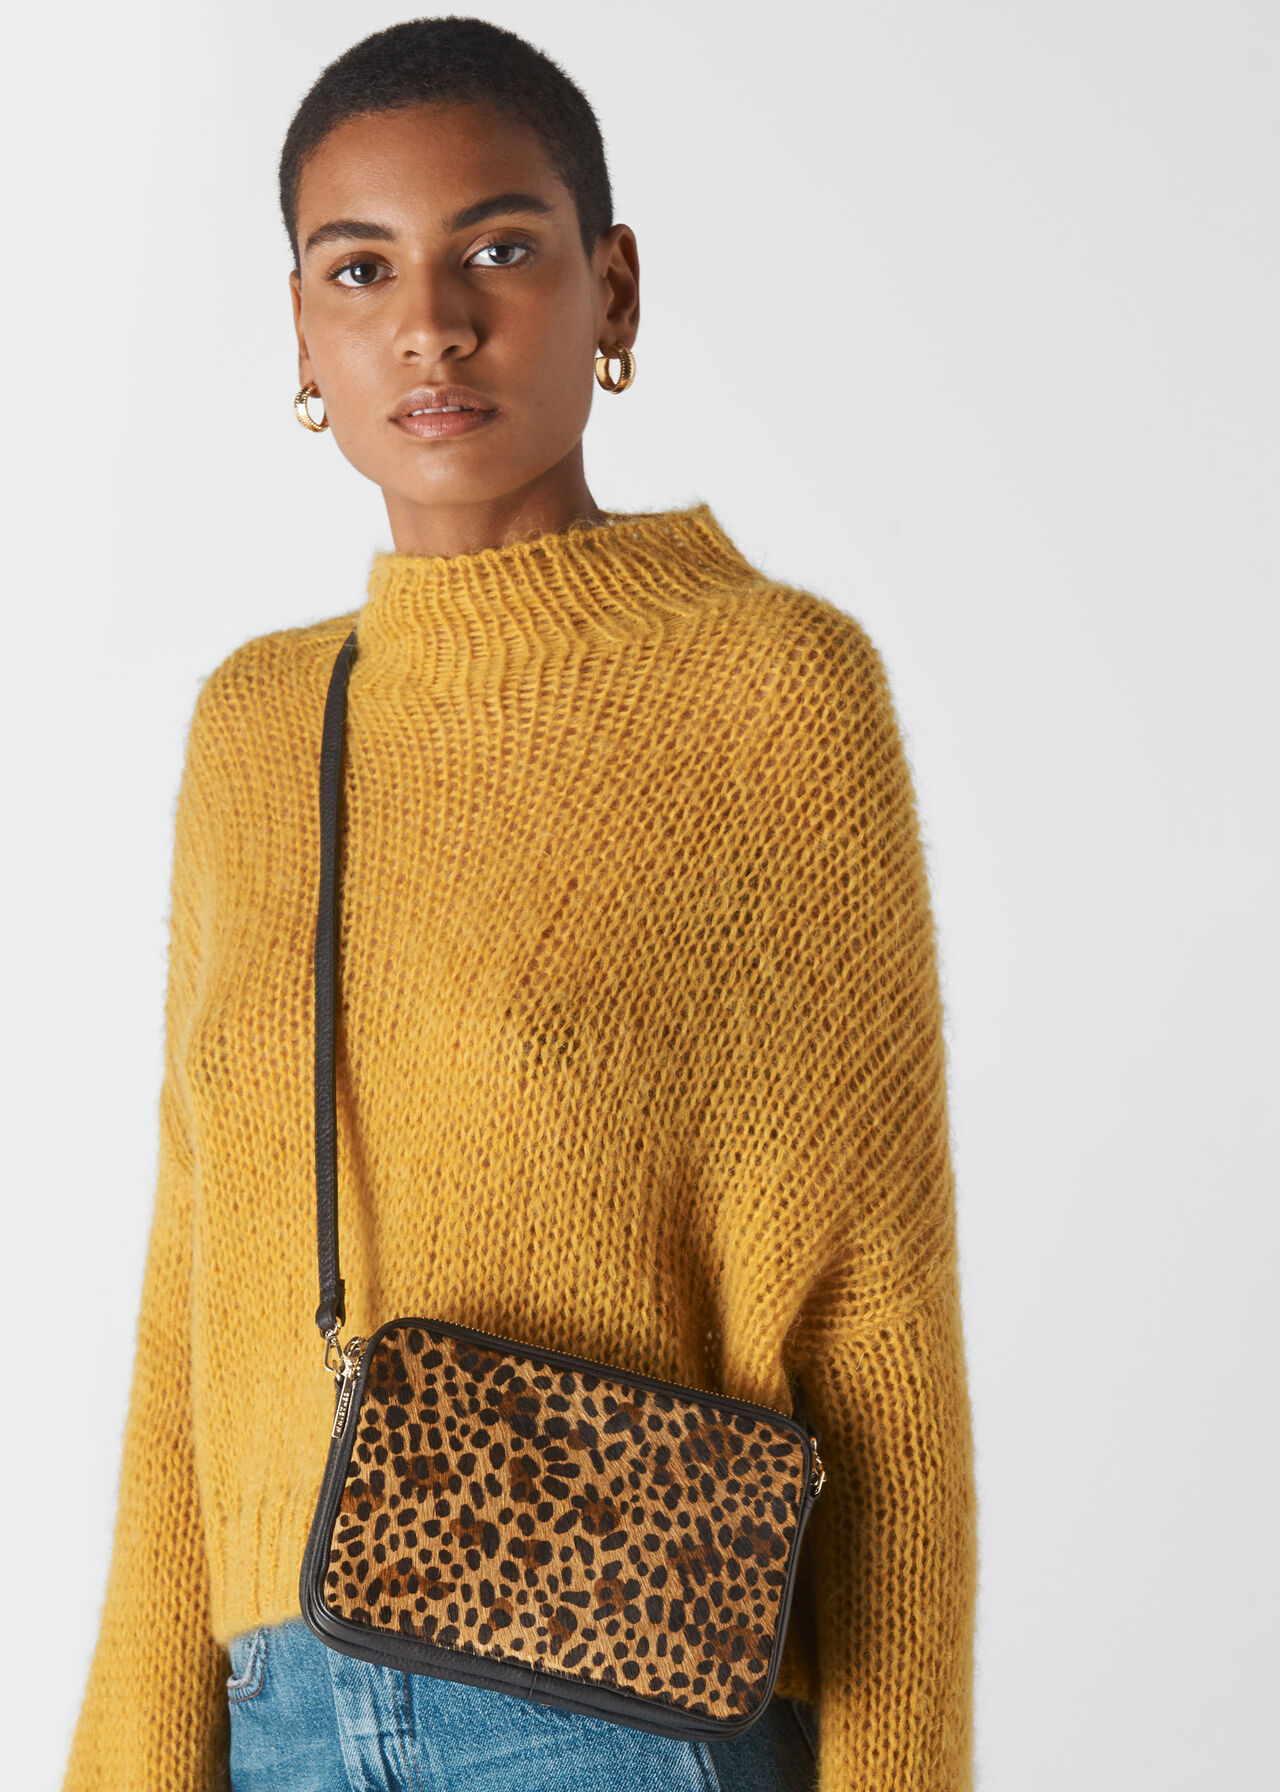 Cami Crossbody Bag Leopard Print